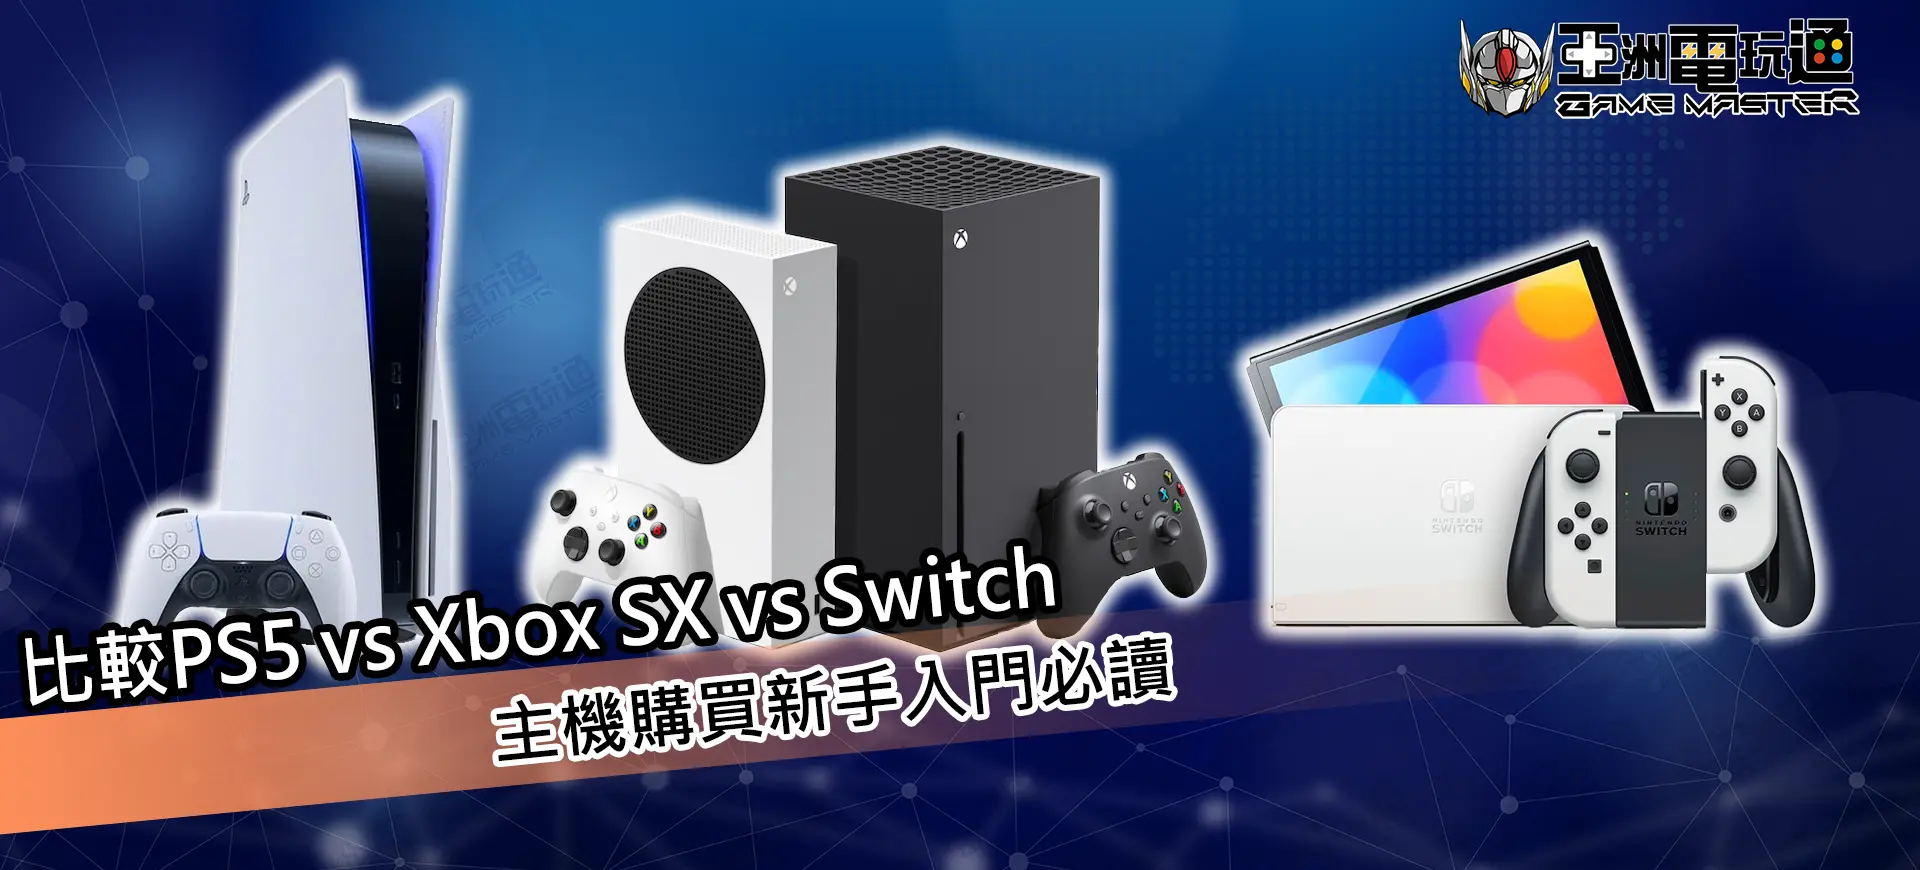 亞洲電玩通 - Ps5 vs Xbox SX vs Switch